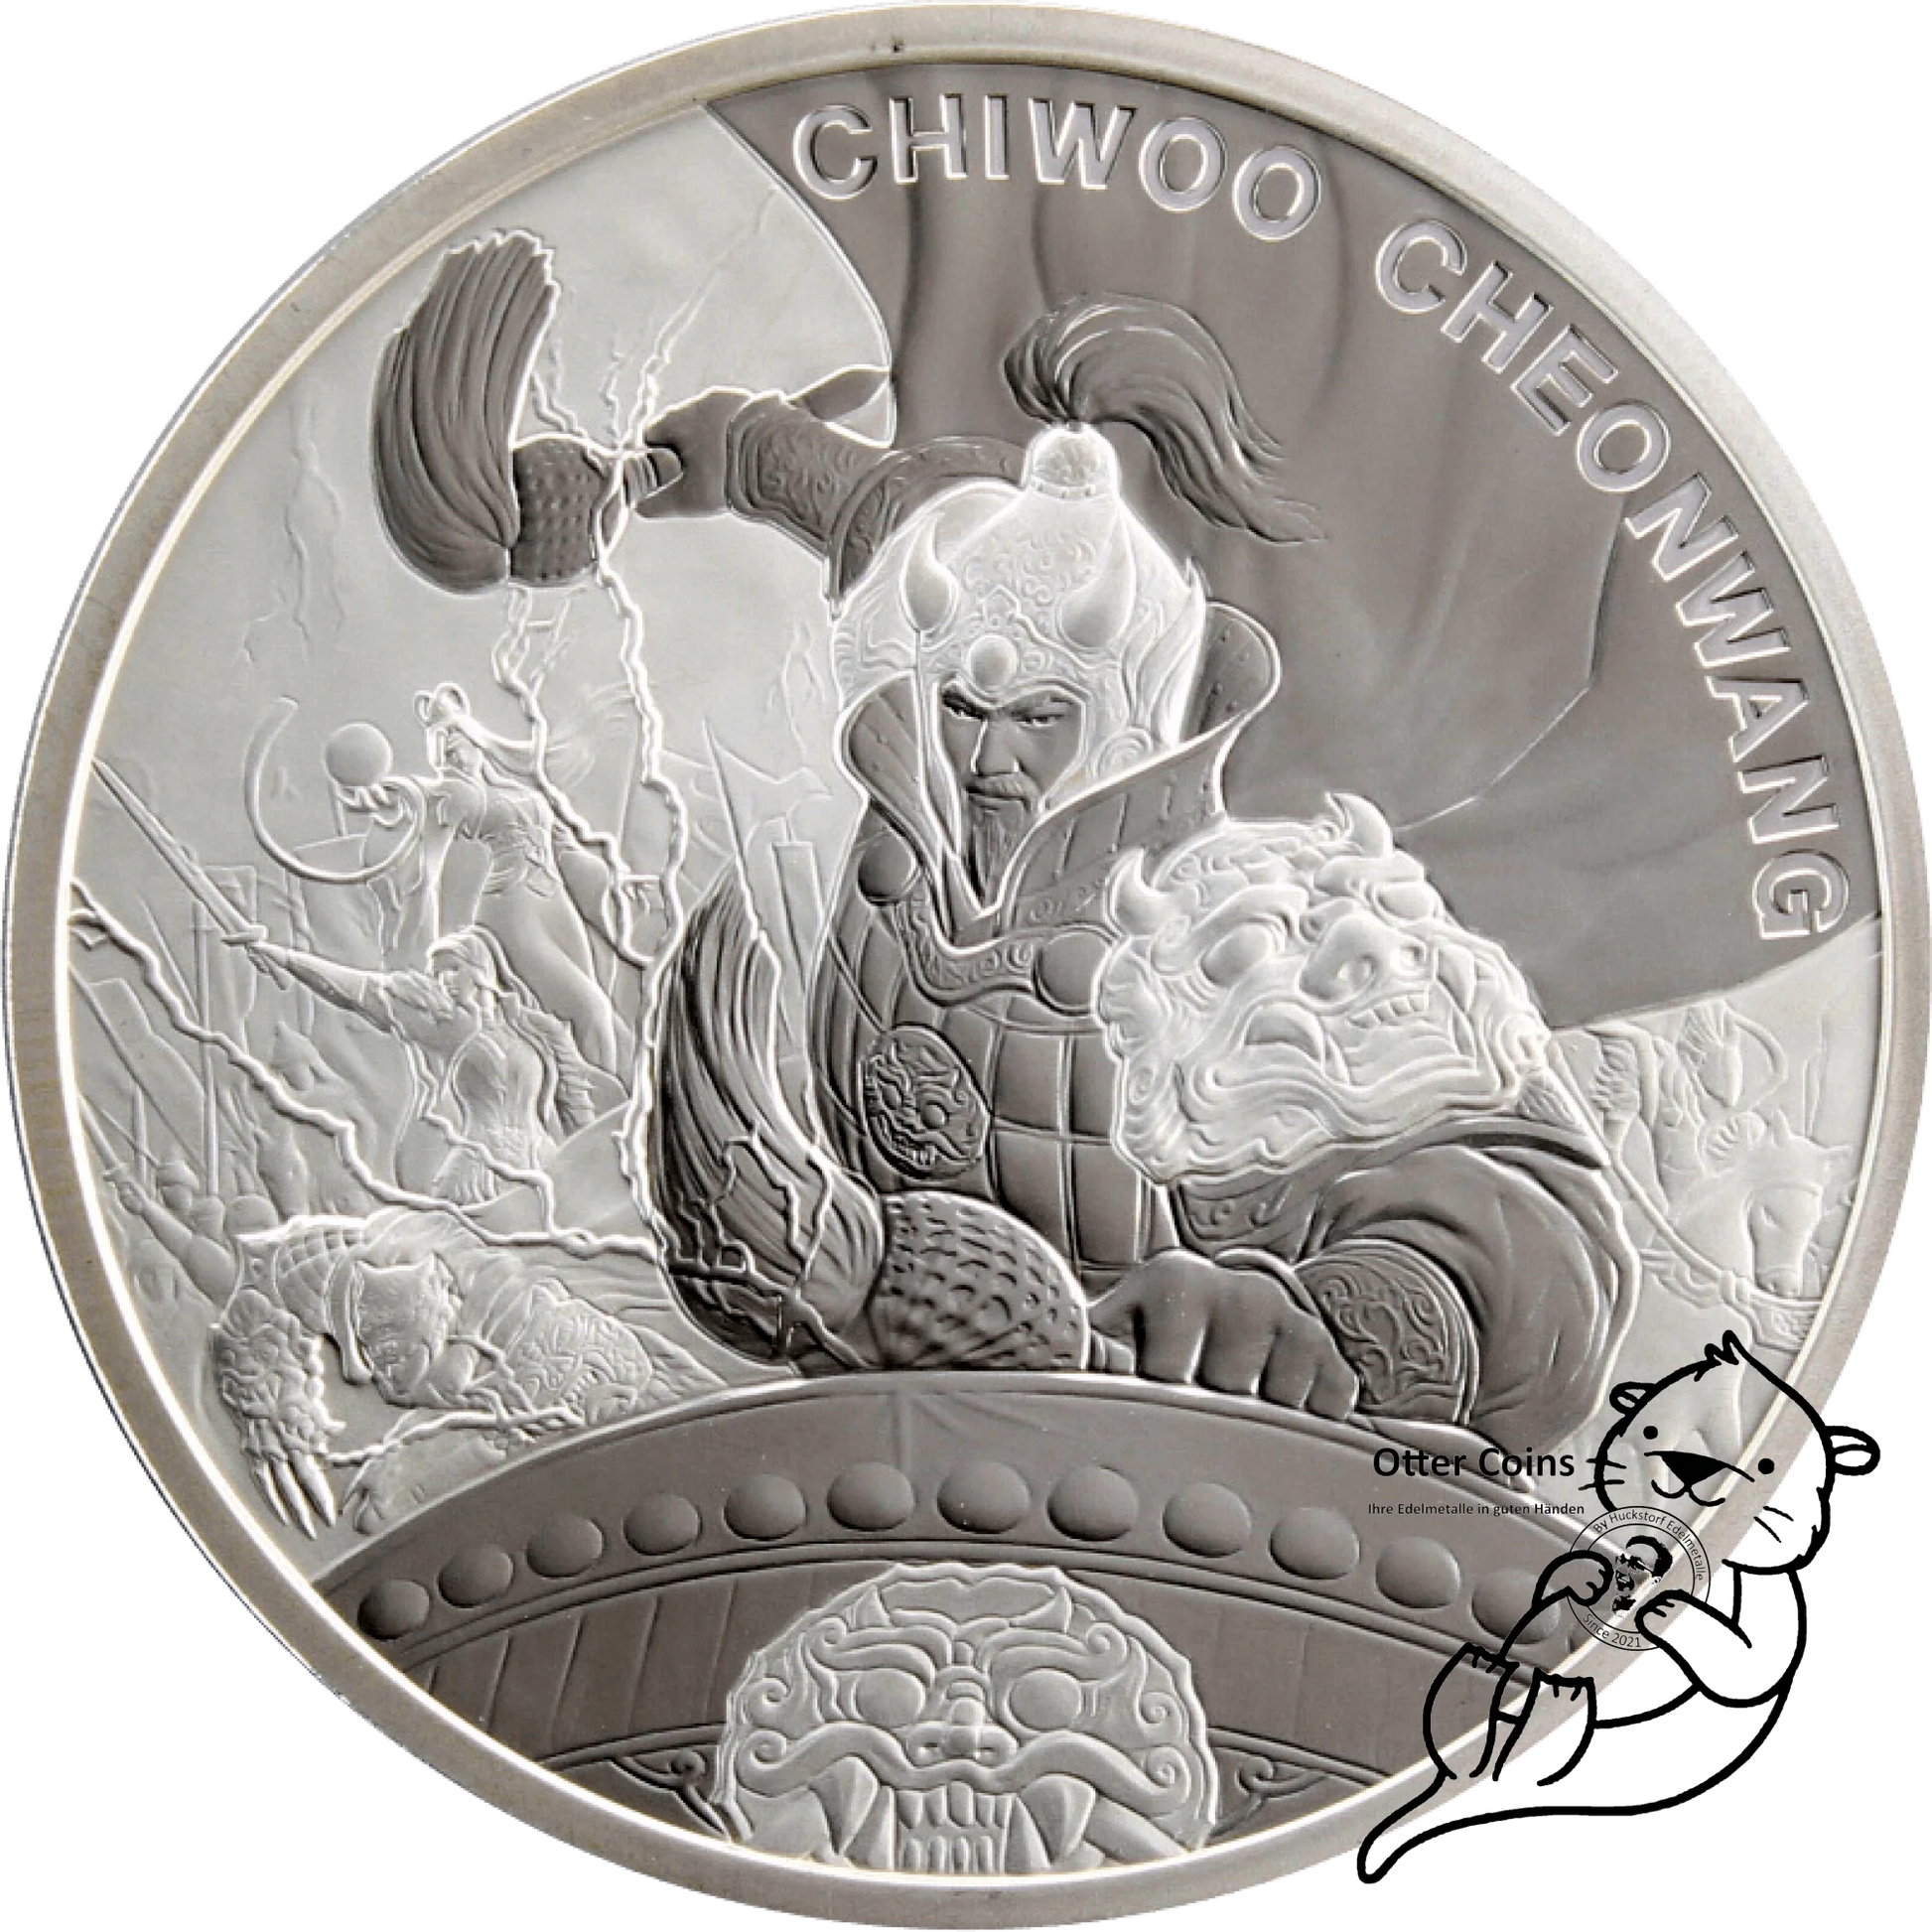 Chiwoo Cheonwang 1 Oz Silbermünze 2021